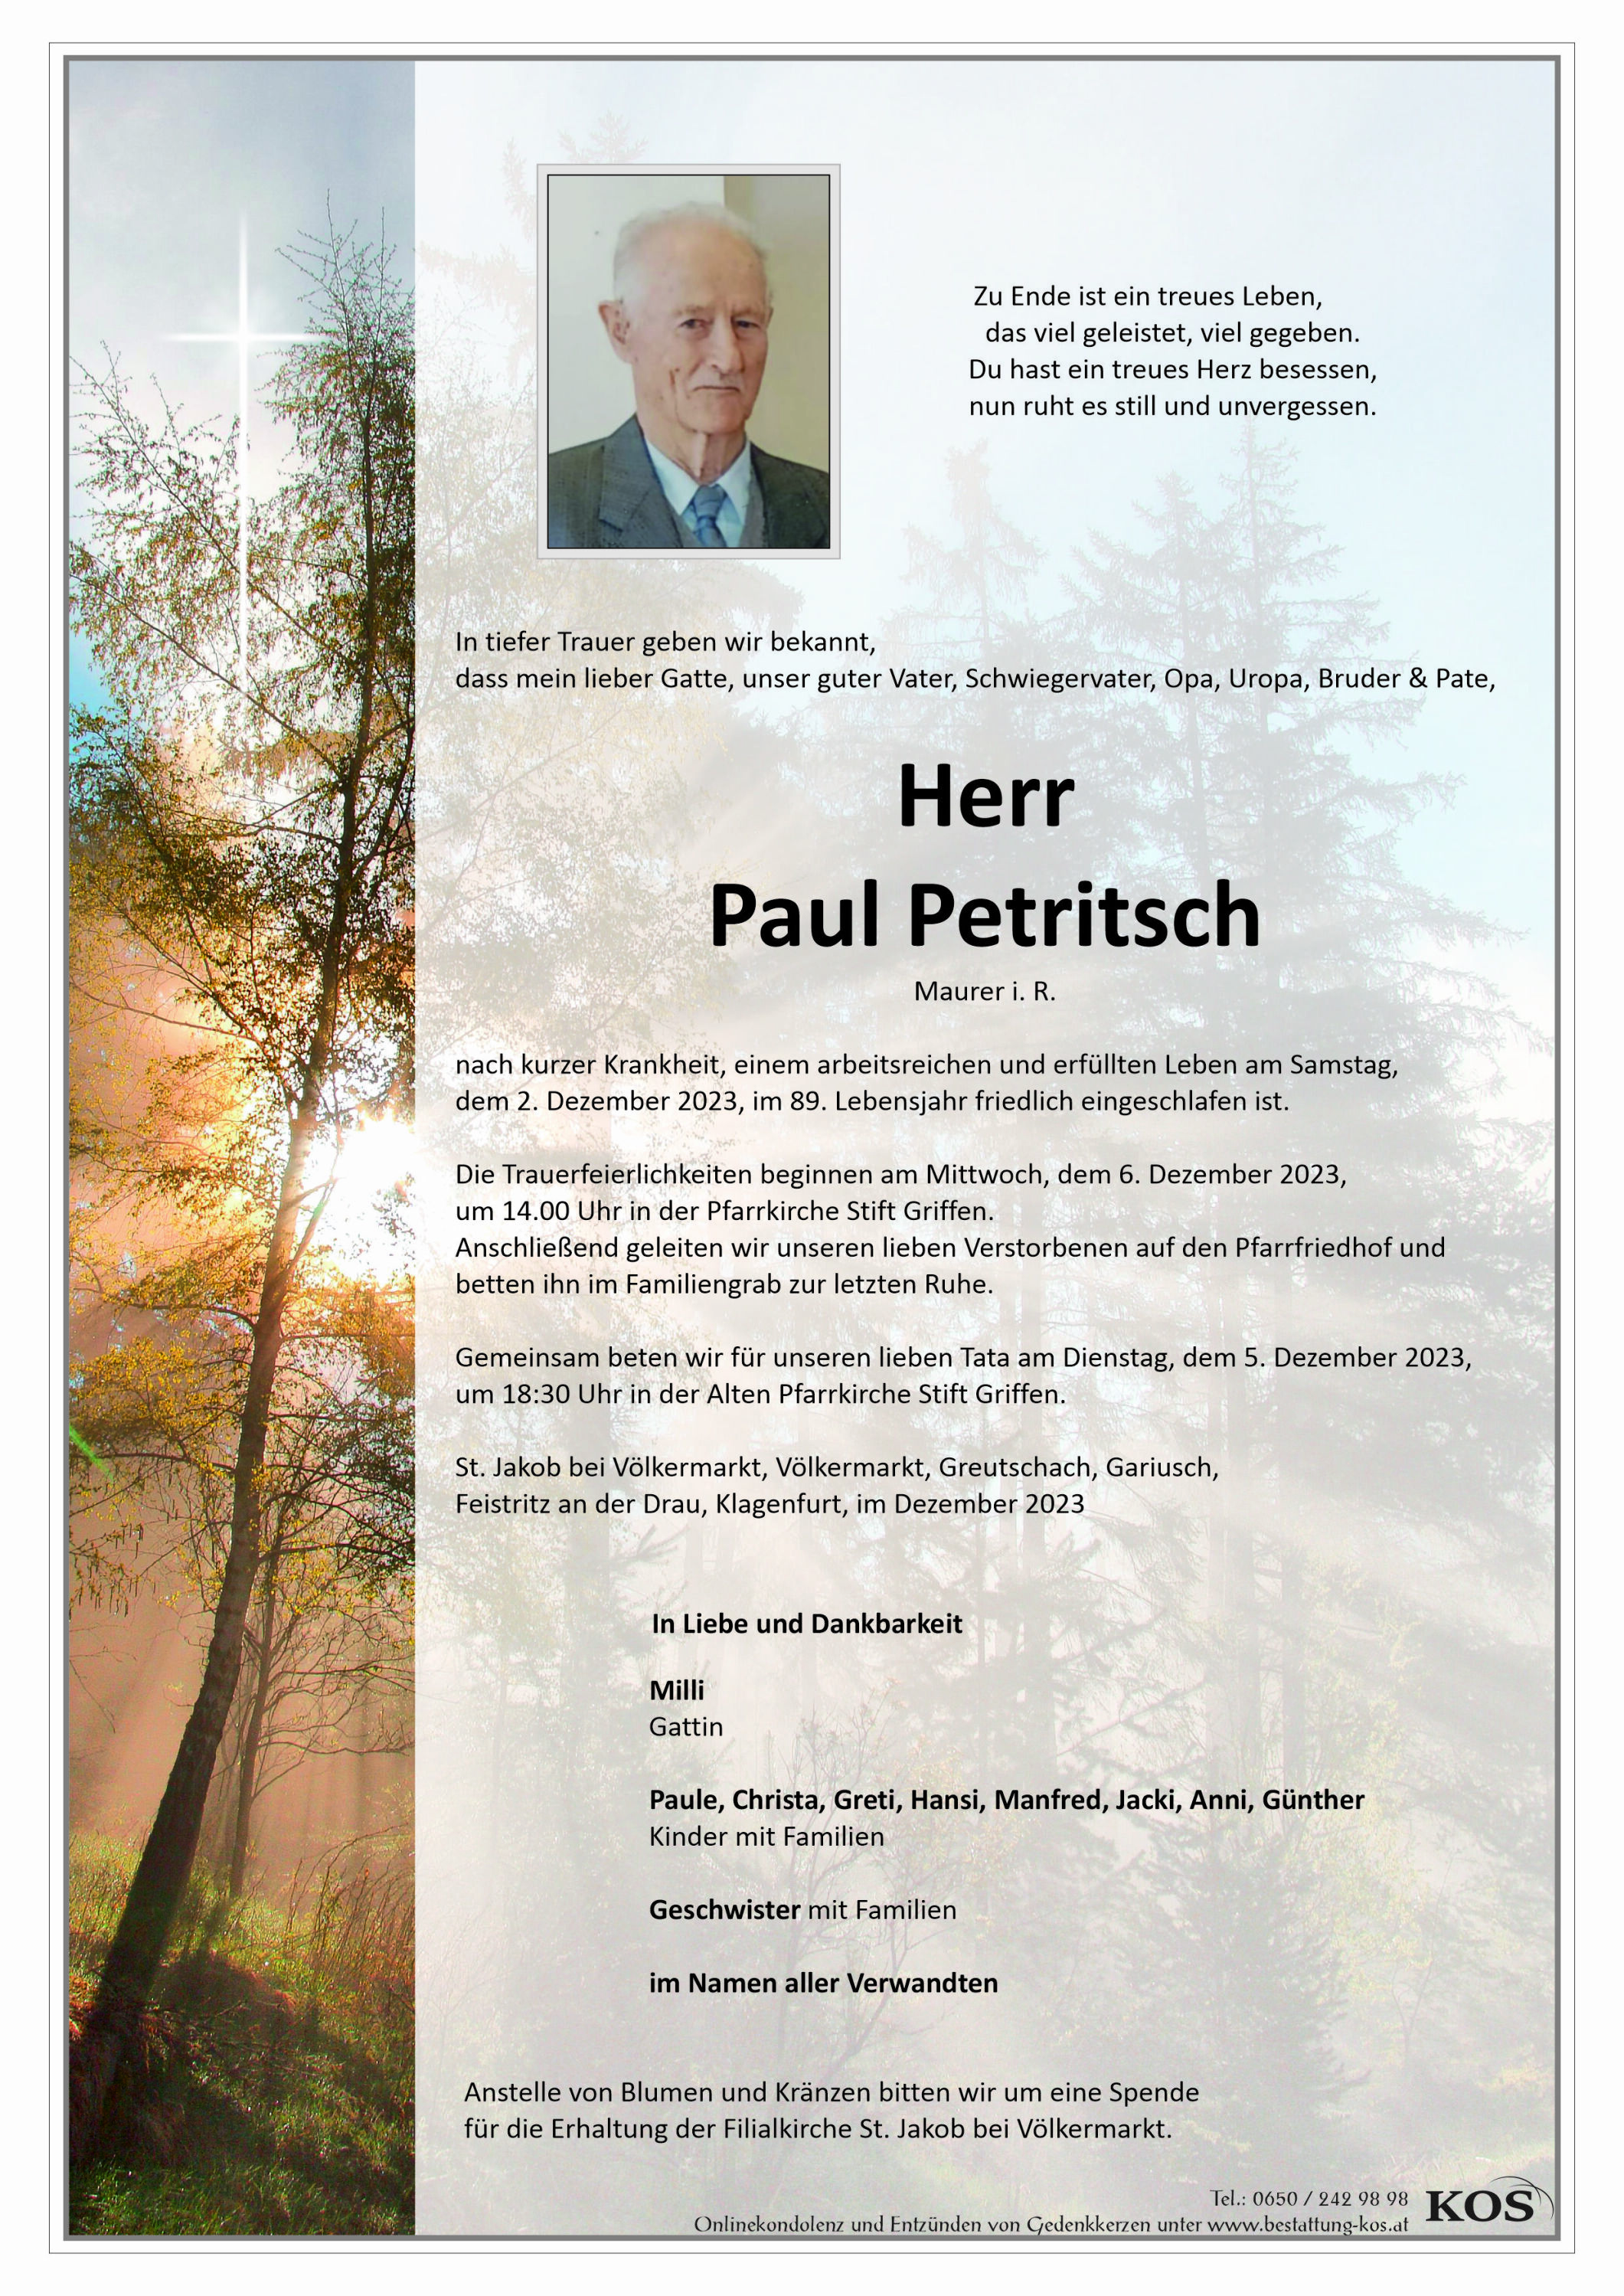 Paul Petritsch